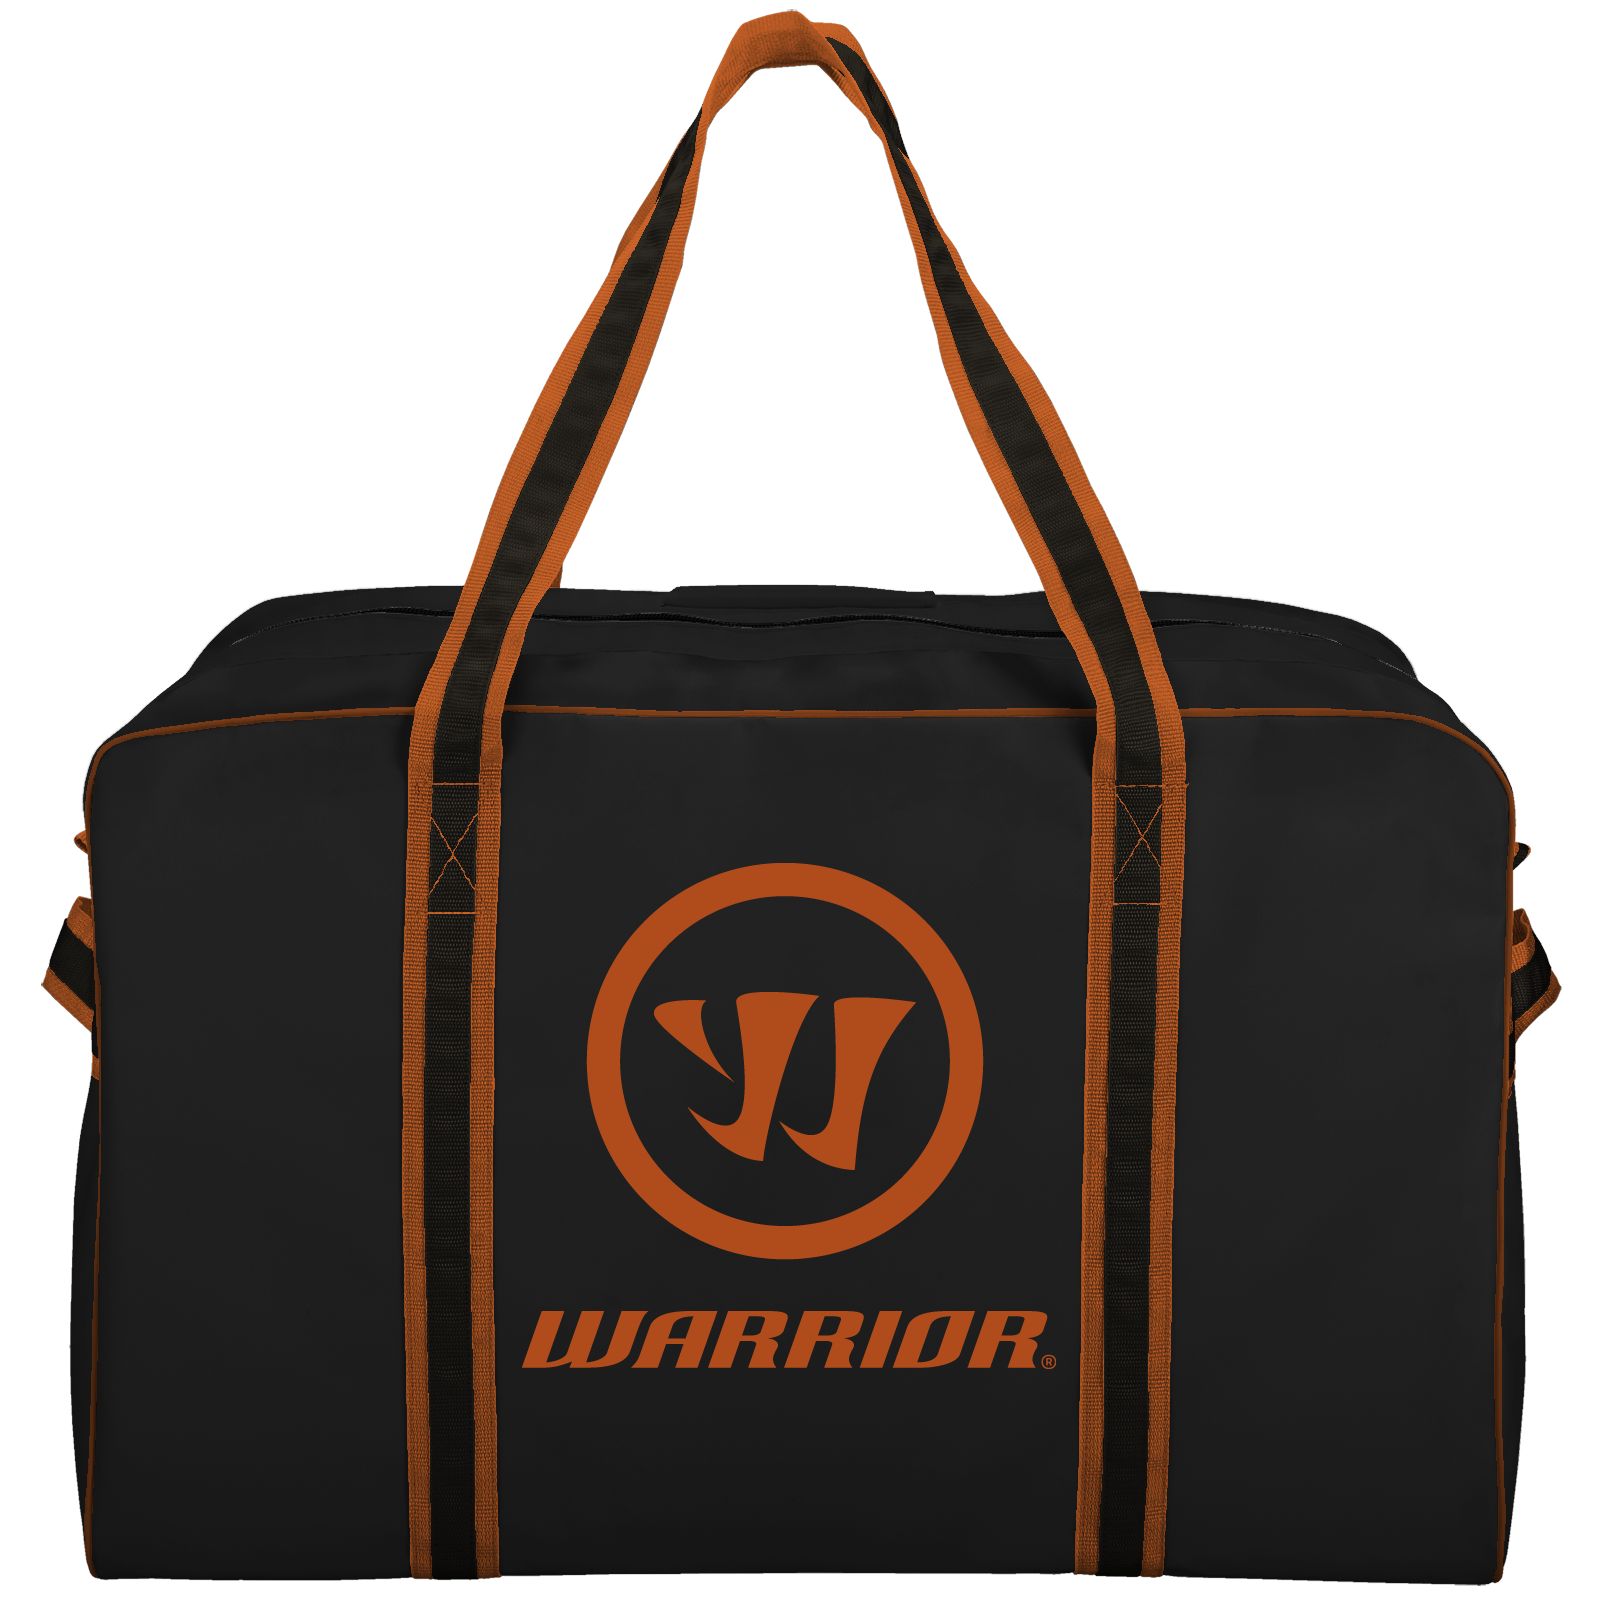 Warrior Pro Bag, Black with Orange image number 0